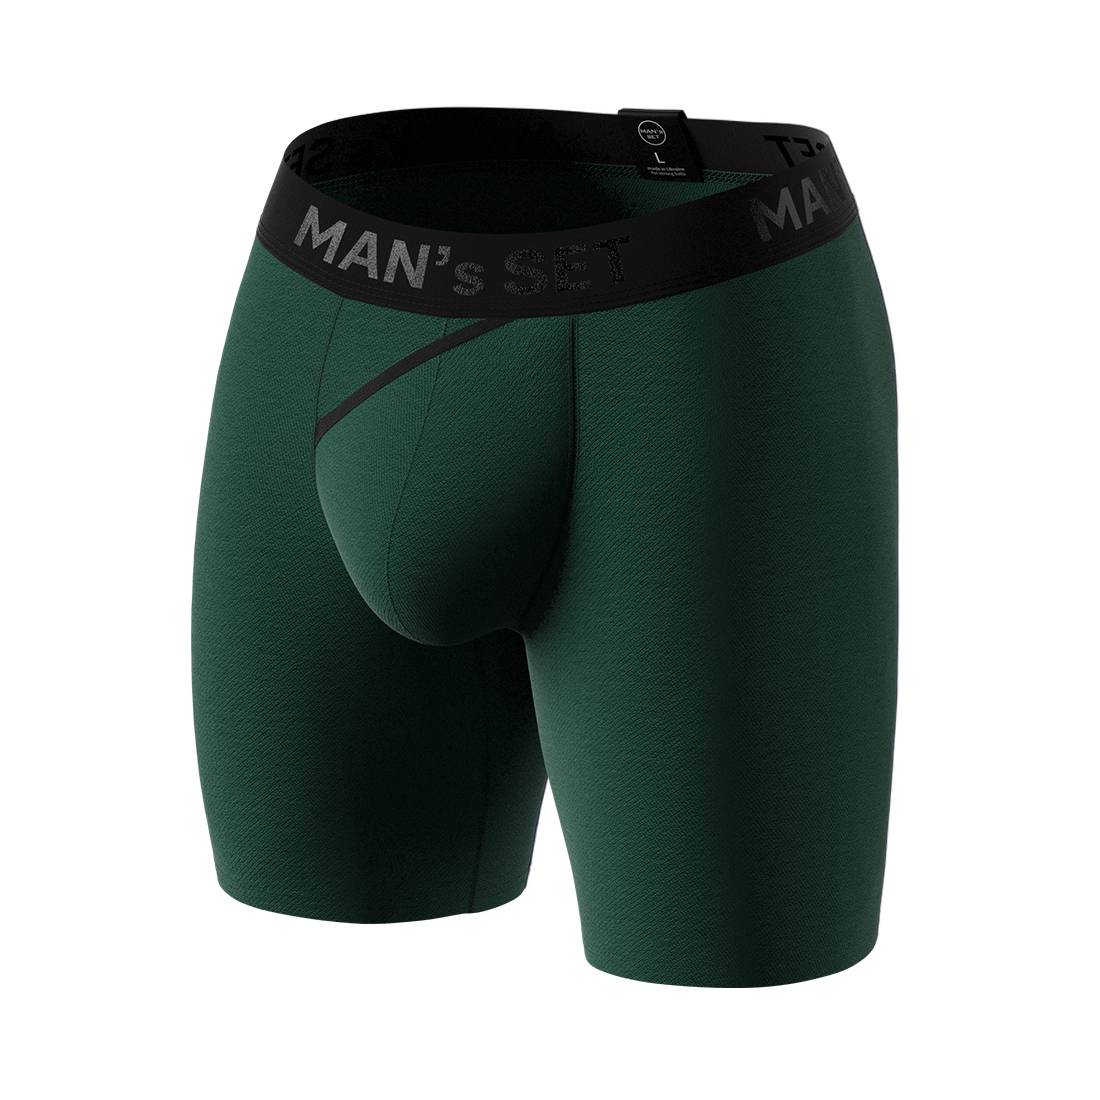 Мужские анатомические боксеры из хлопка, Anatomic Long 2.0, Black Series, тёмно-зелёный MansSet - Фото 2